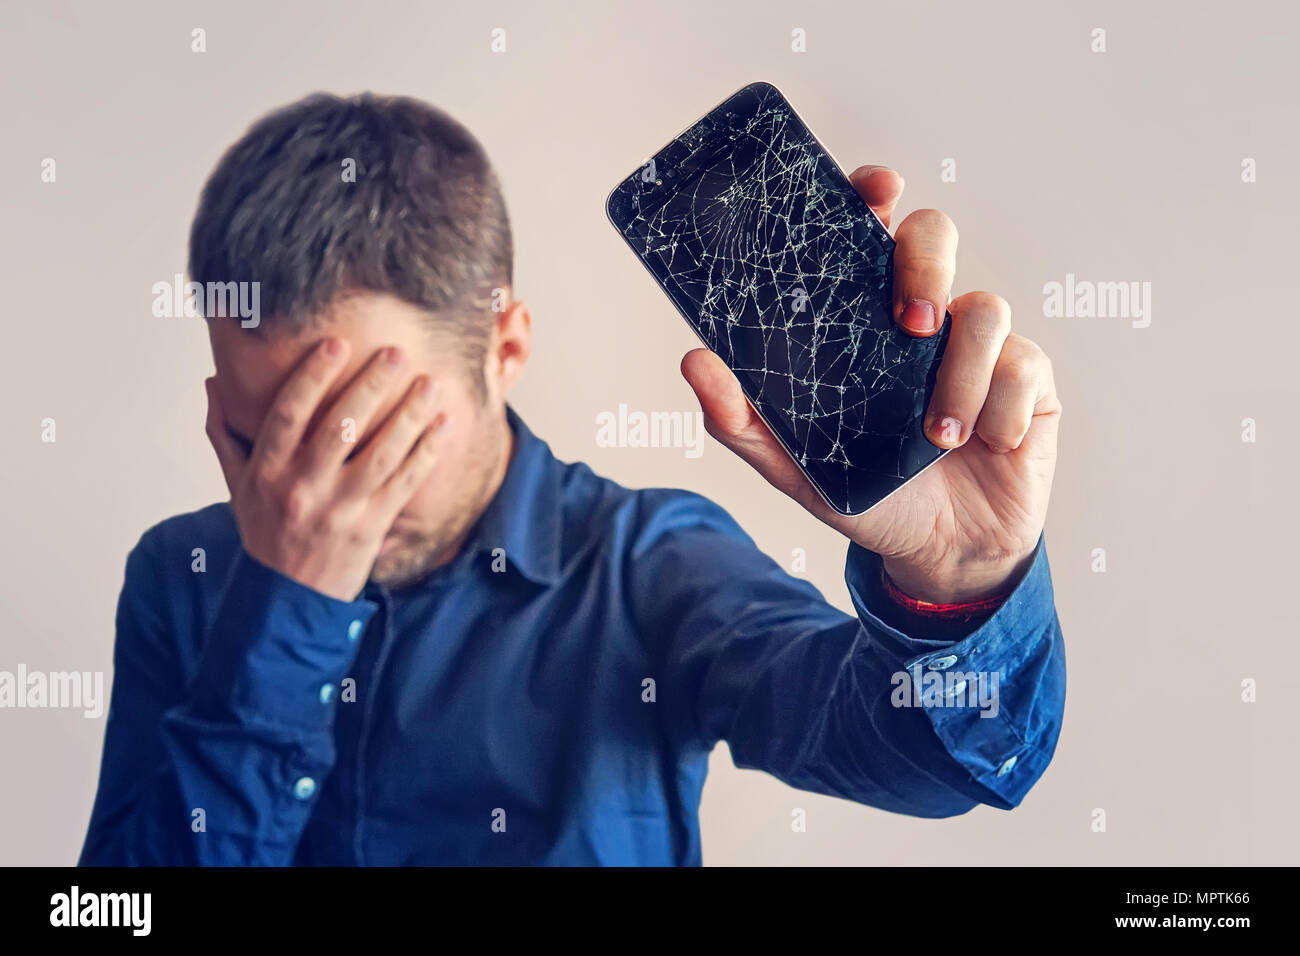 Le mec est maintenant un smartphone noir avec un écran cassé. Écran cassé sans cadre moderne de téléphone. guy pleurer avec ses yeux fermés et les mains dans son Banque D'Images